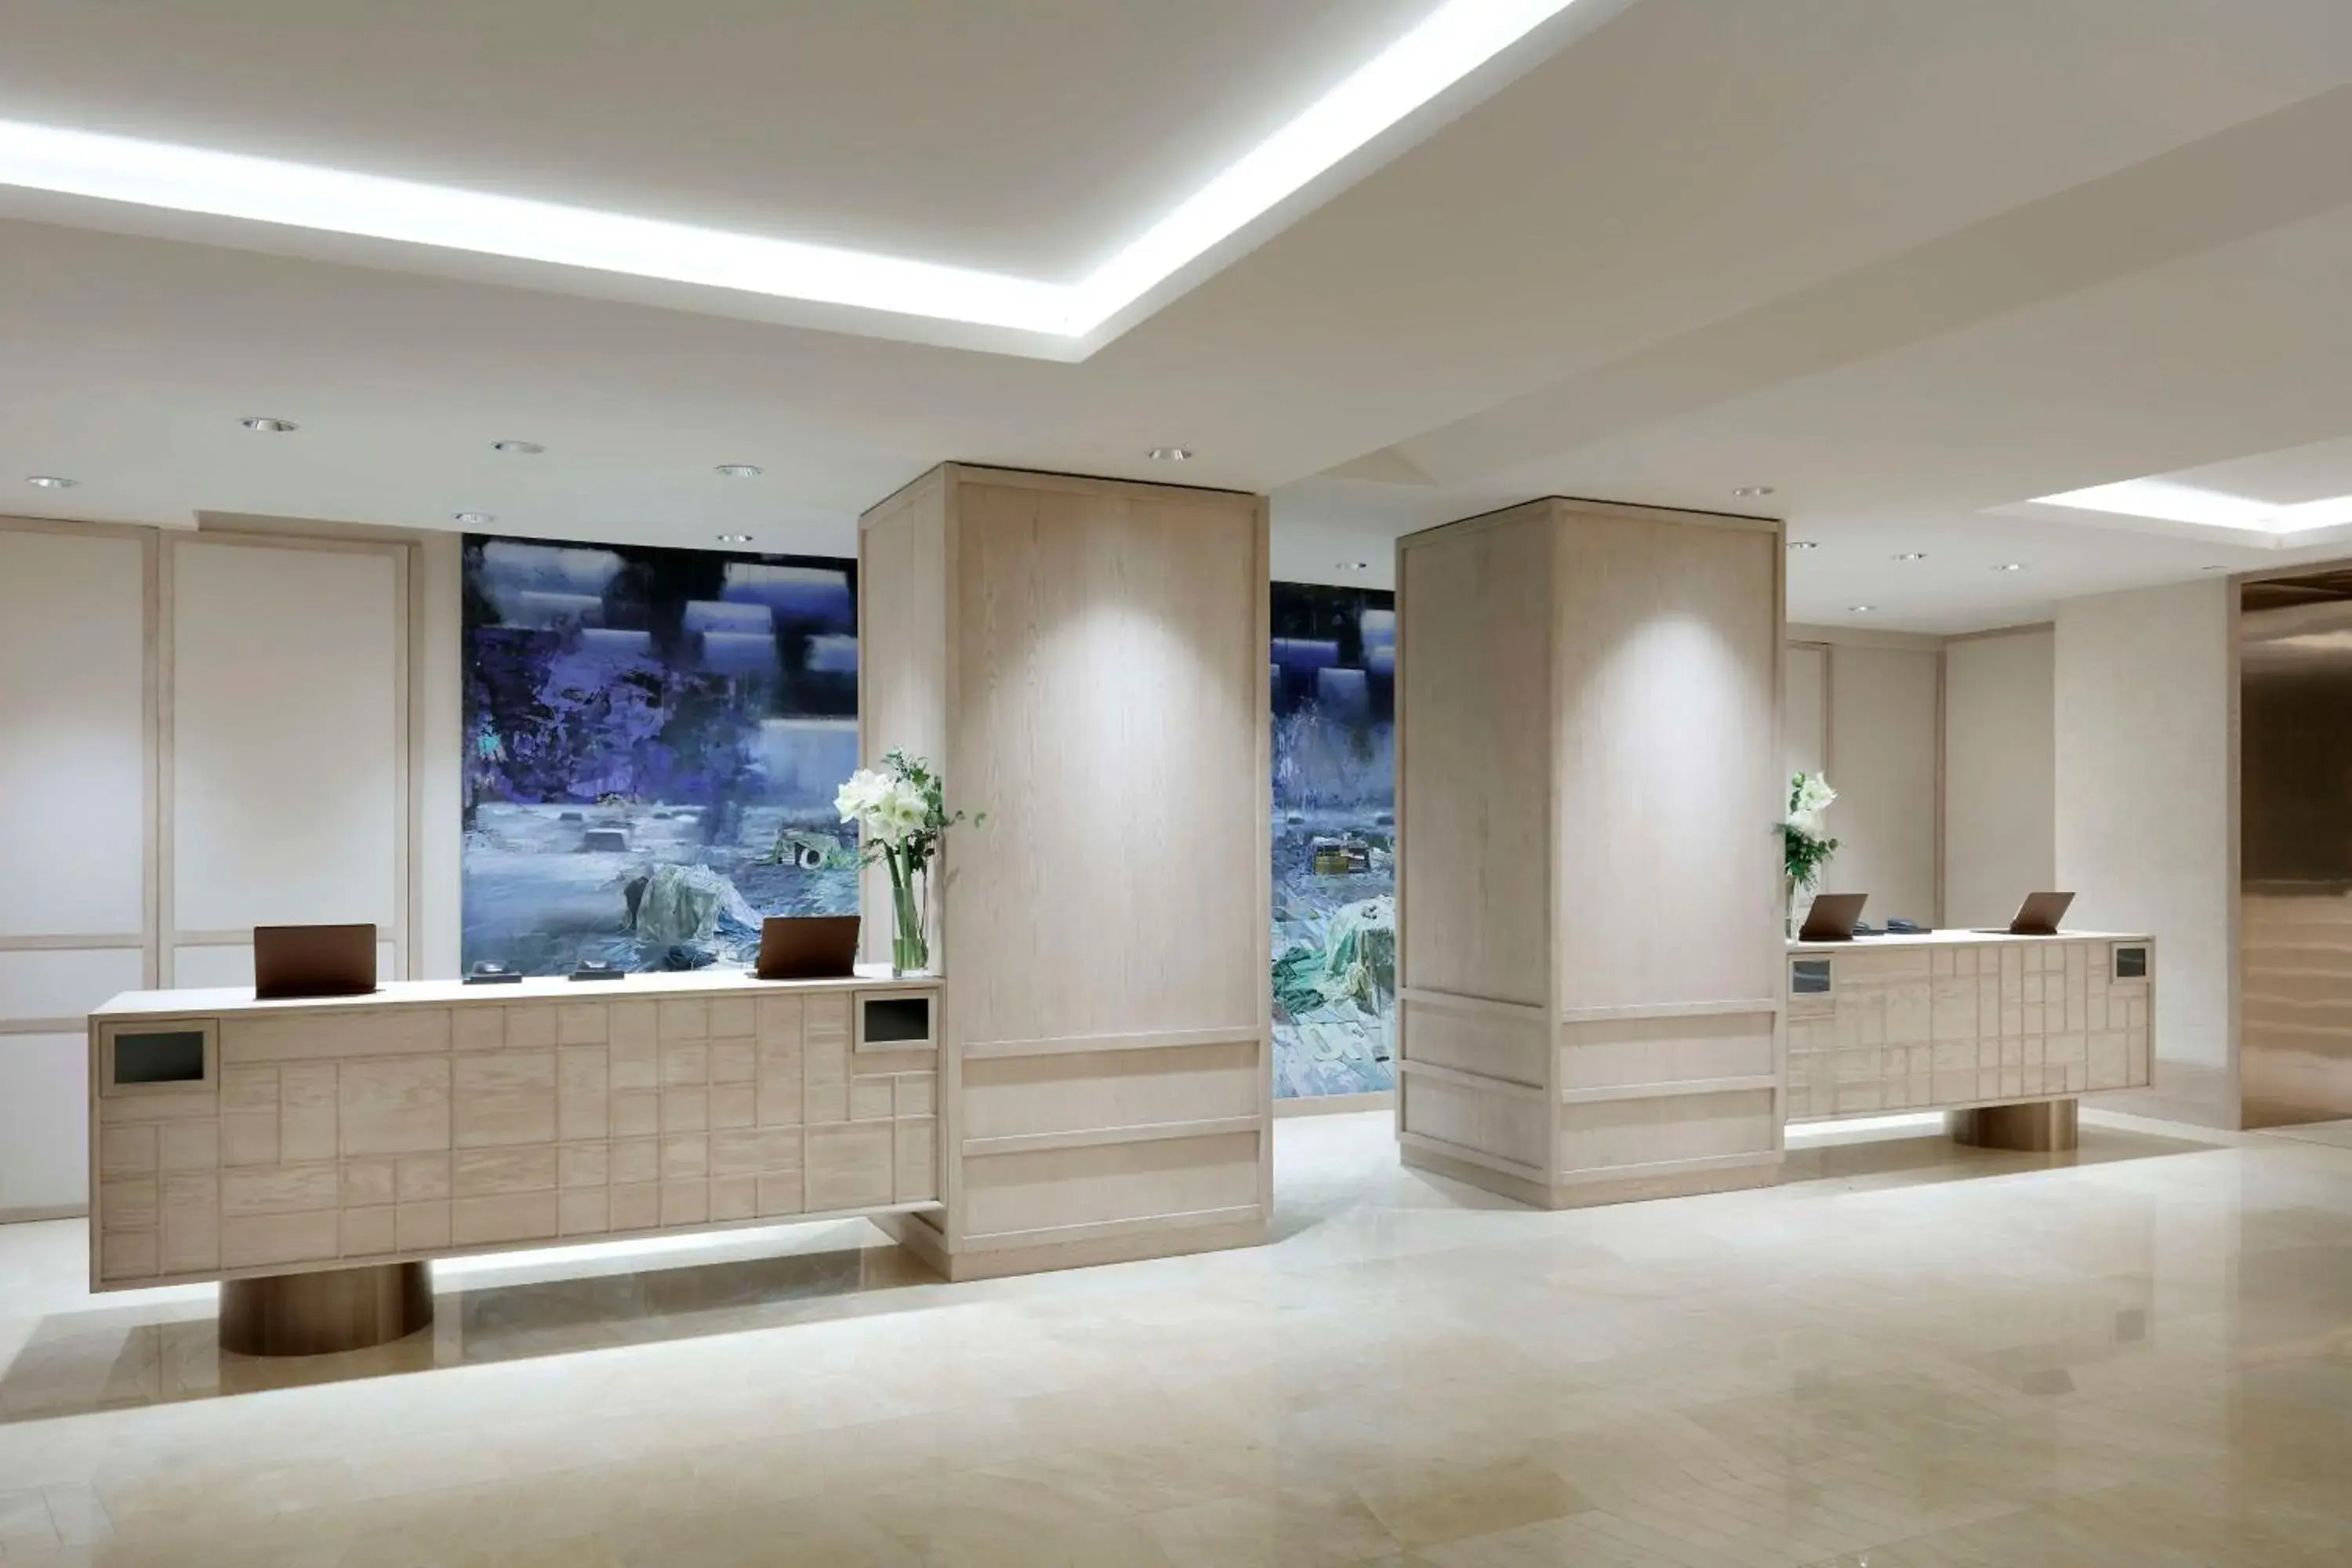 Lobby or reception, Lobby/Reception in Hyatt Regency Hesperia Madrid